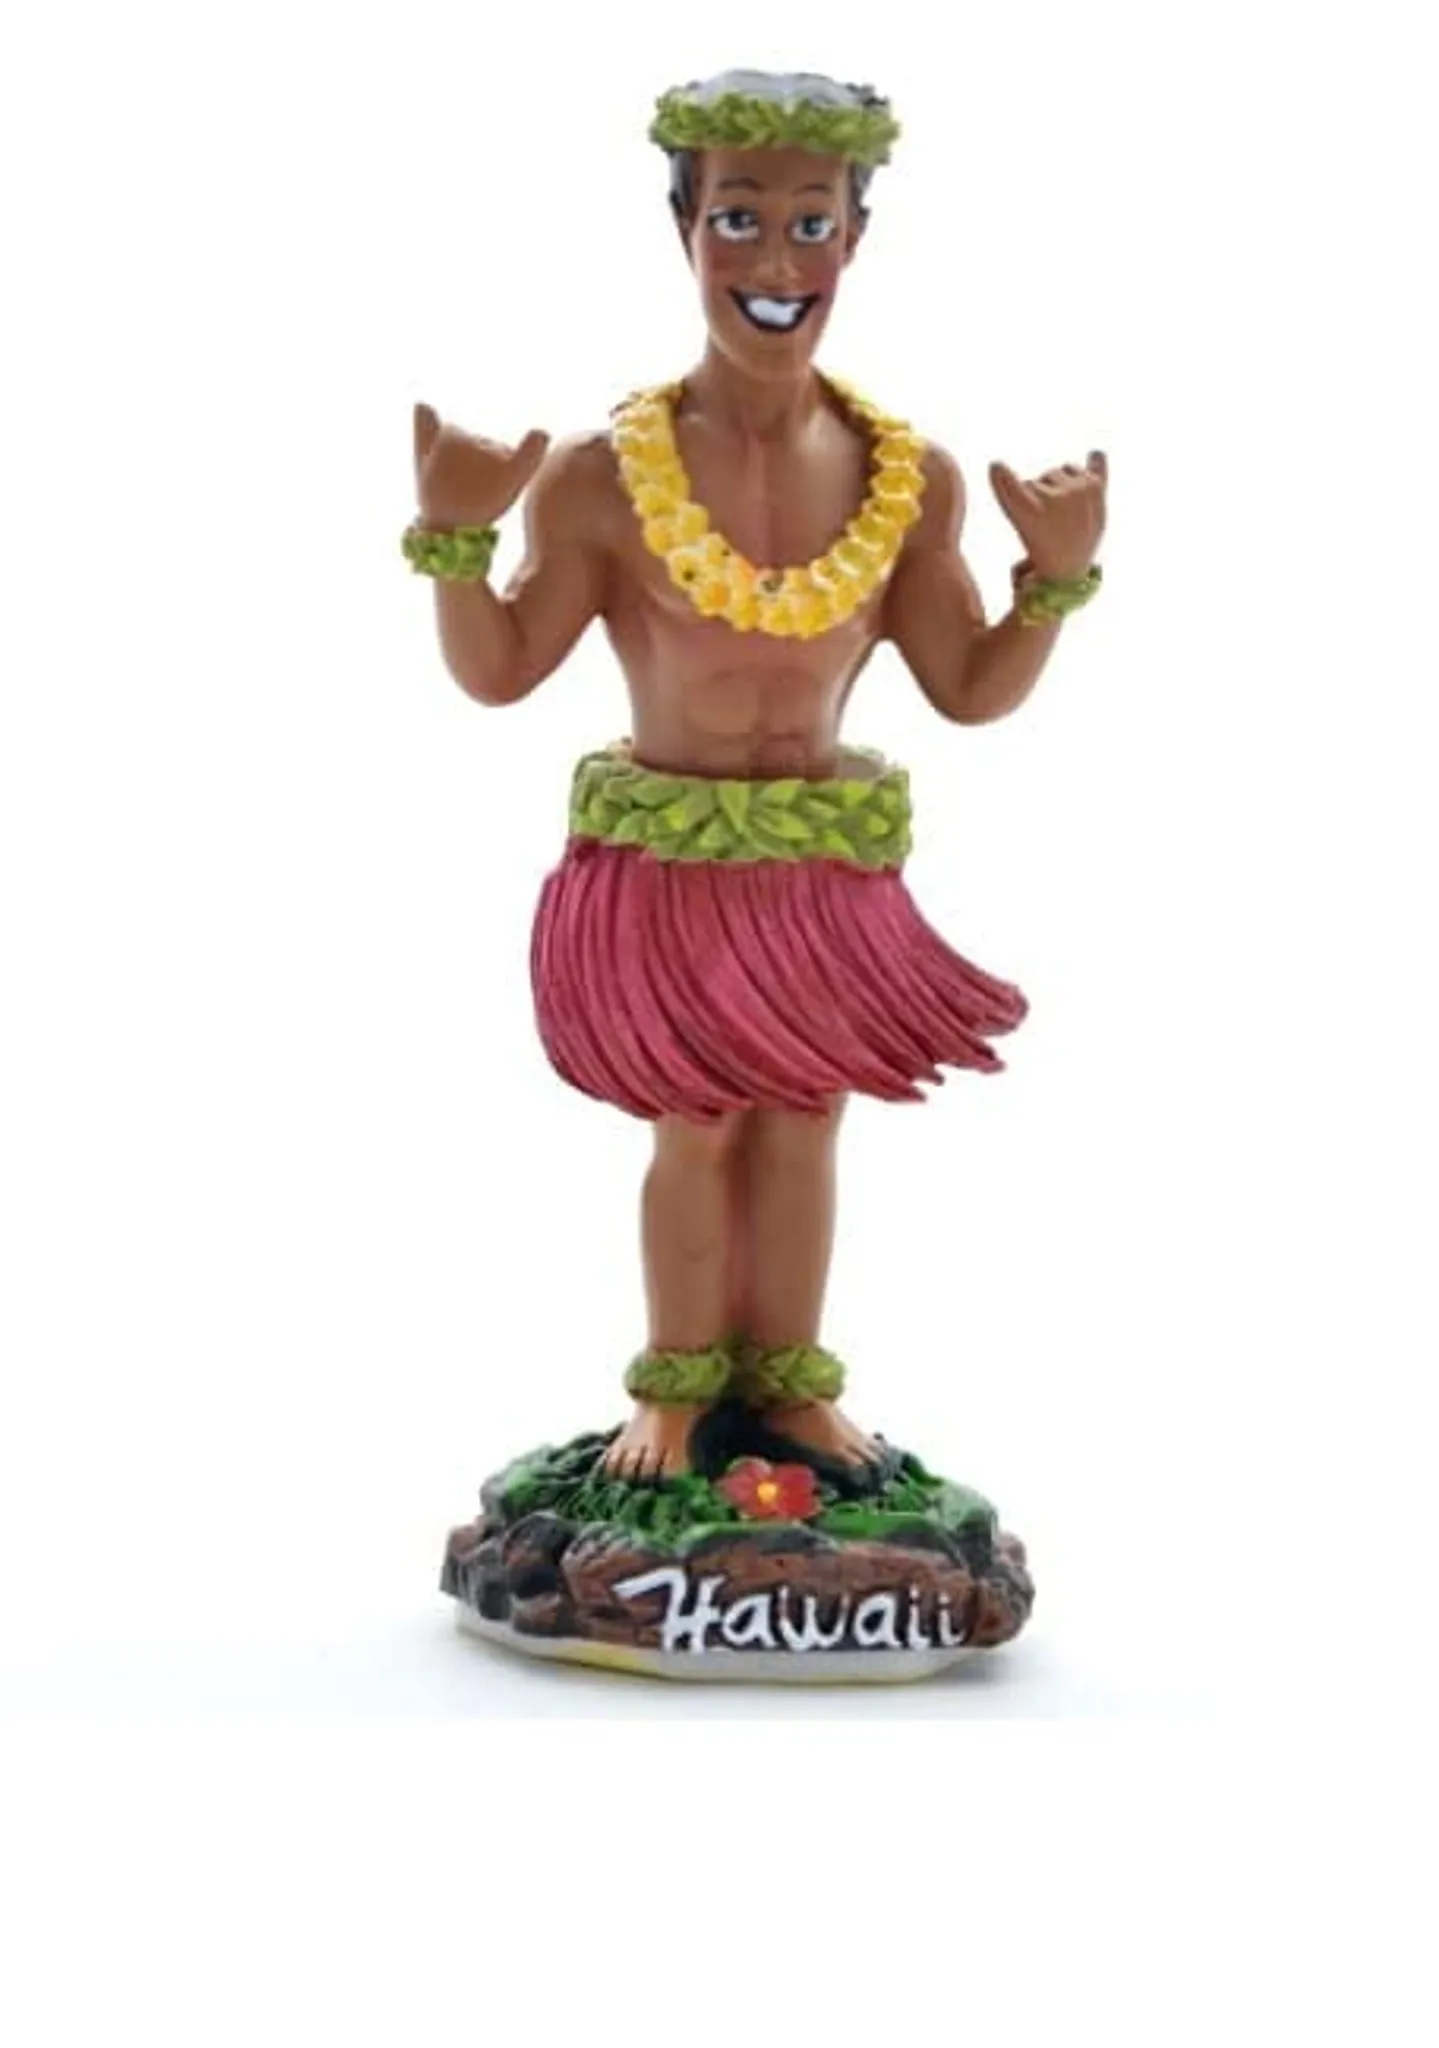 Solar Wackelfiguren Für Auto Hawaii Girl,Solar Wackel Figur,Hawaii